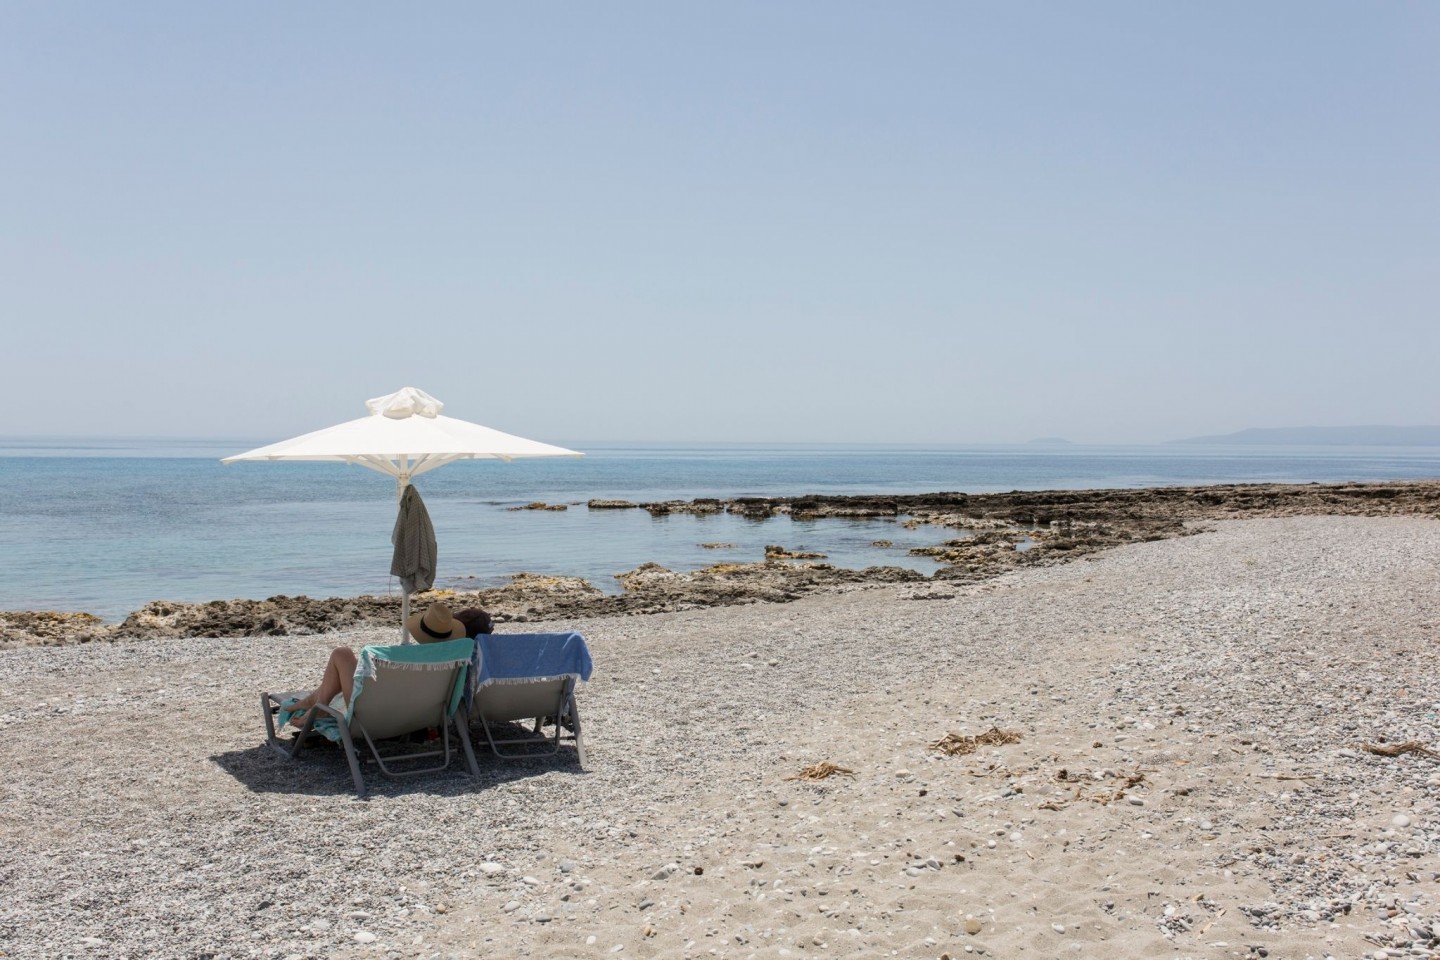 Touristen genießen den Ritsa-Strand in Kardamyli, einer Stadt am Meer fünfunddreißig Kilometer südöstlich von Kalamata, Peloponnes.